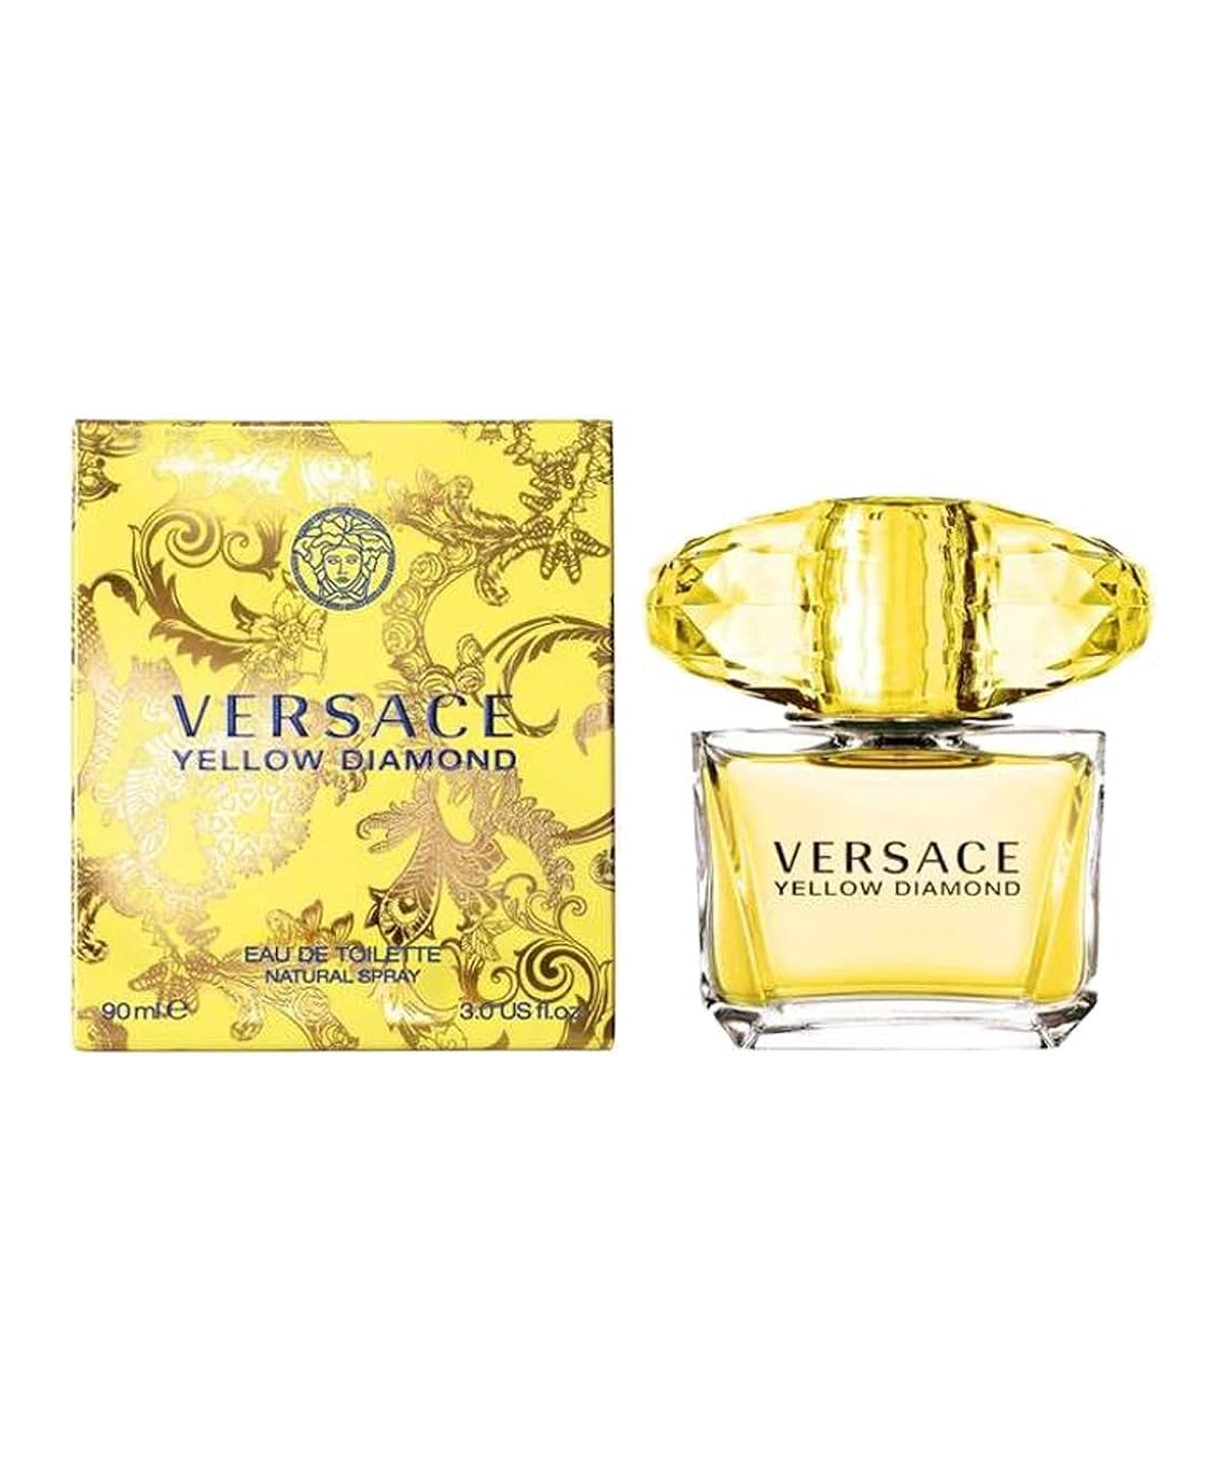 Perfume «Versace» Yellow Diamond, for women, 90 ml